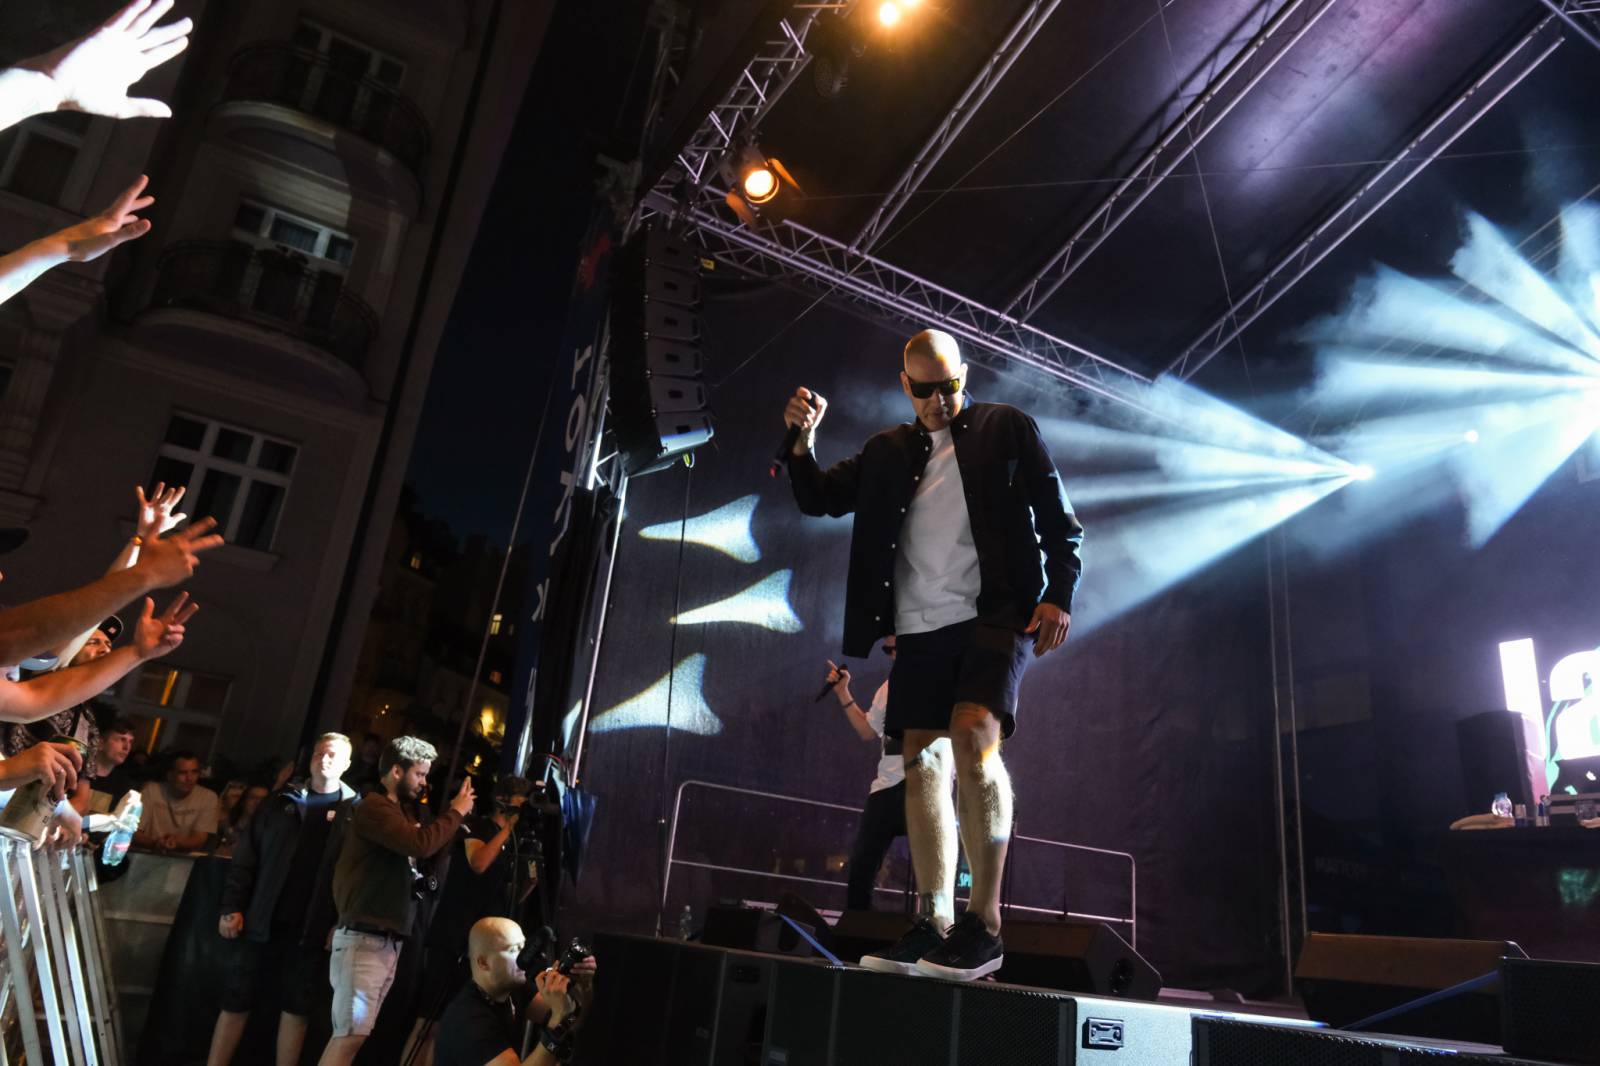 Festivalem ve Varech duněl rap PSH, představil se i herec a režisér Liev Schreiber